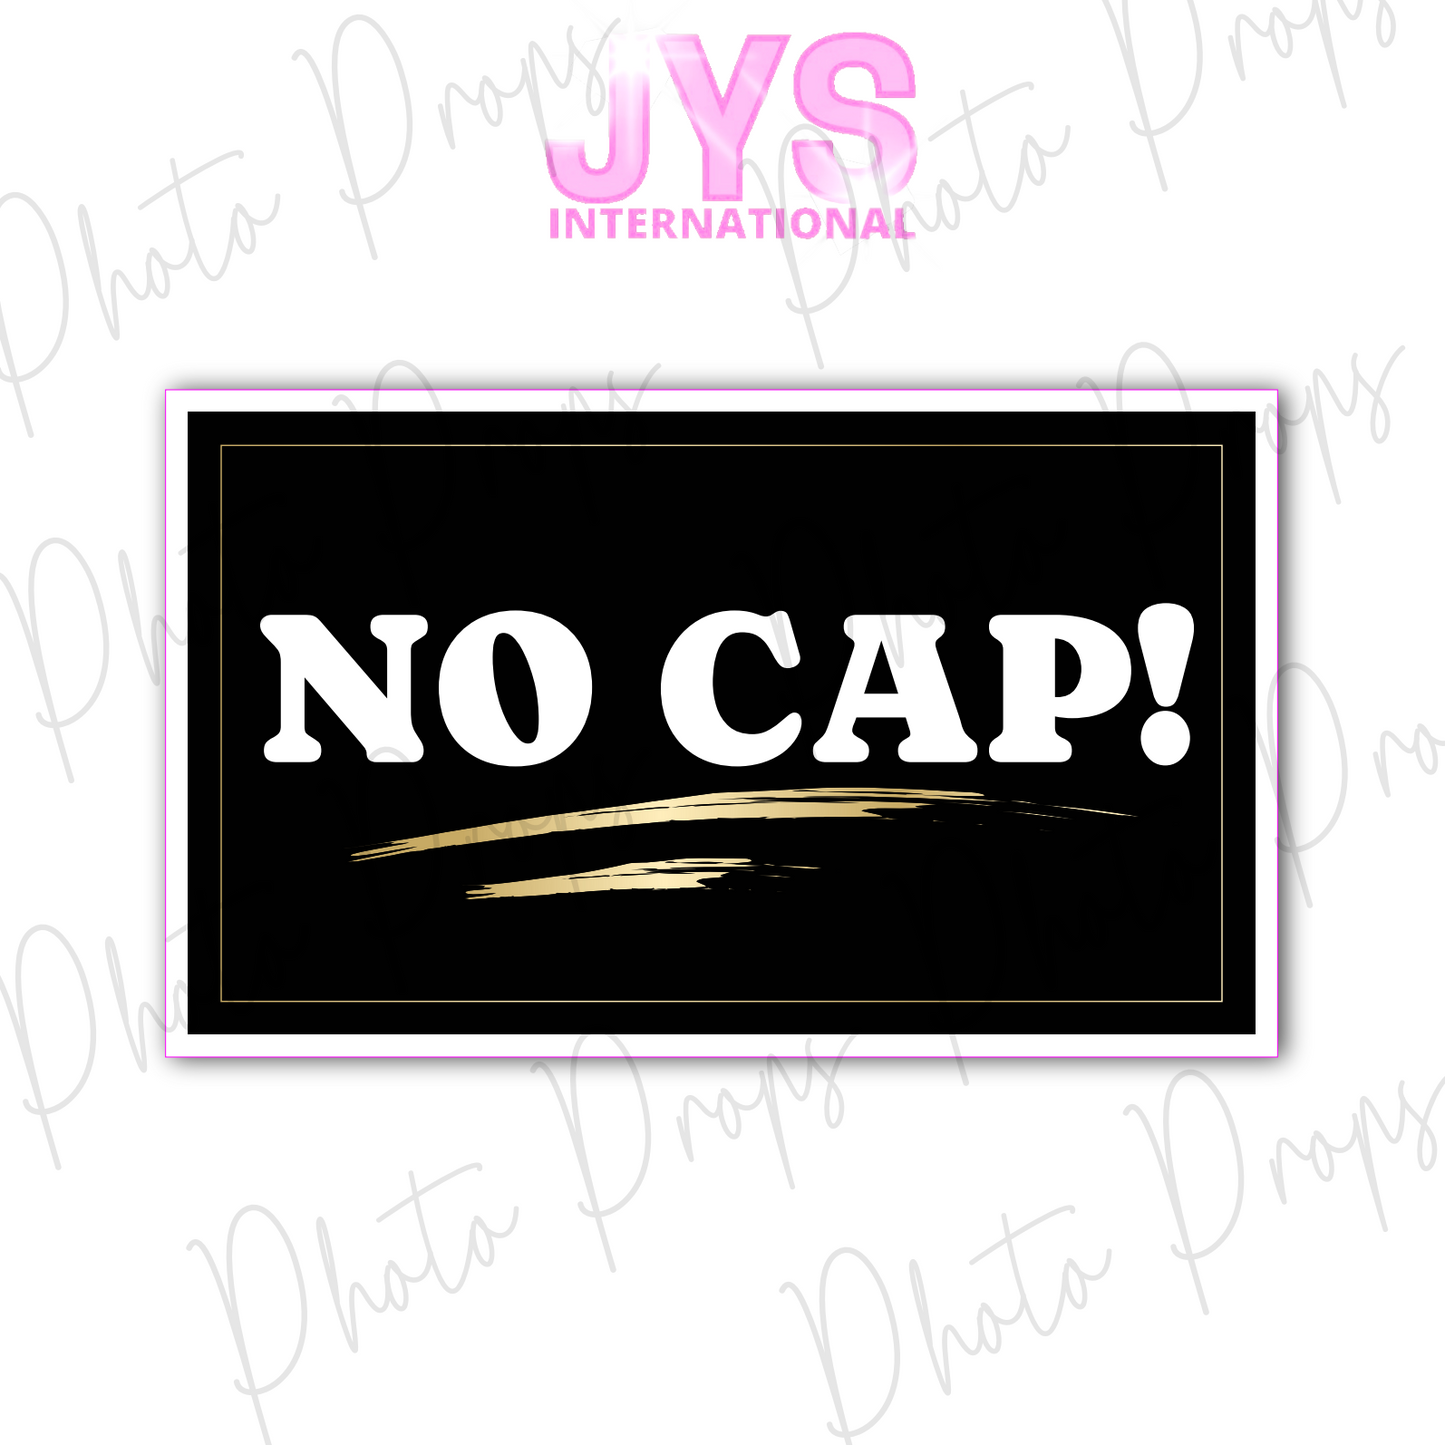 NO CAP!